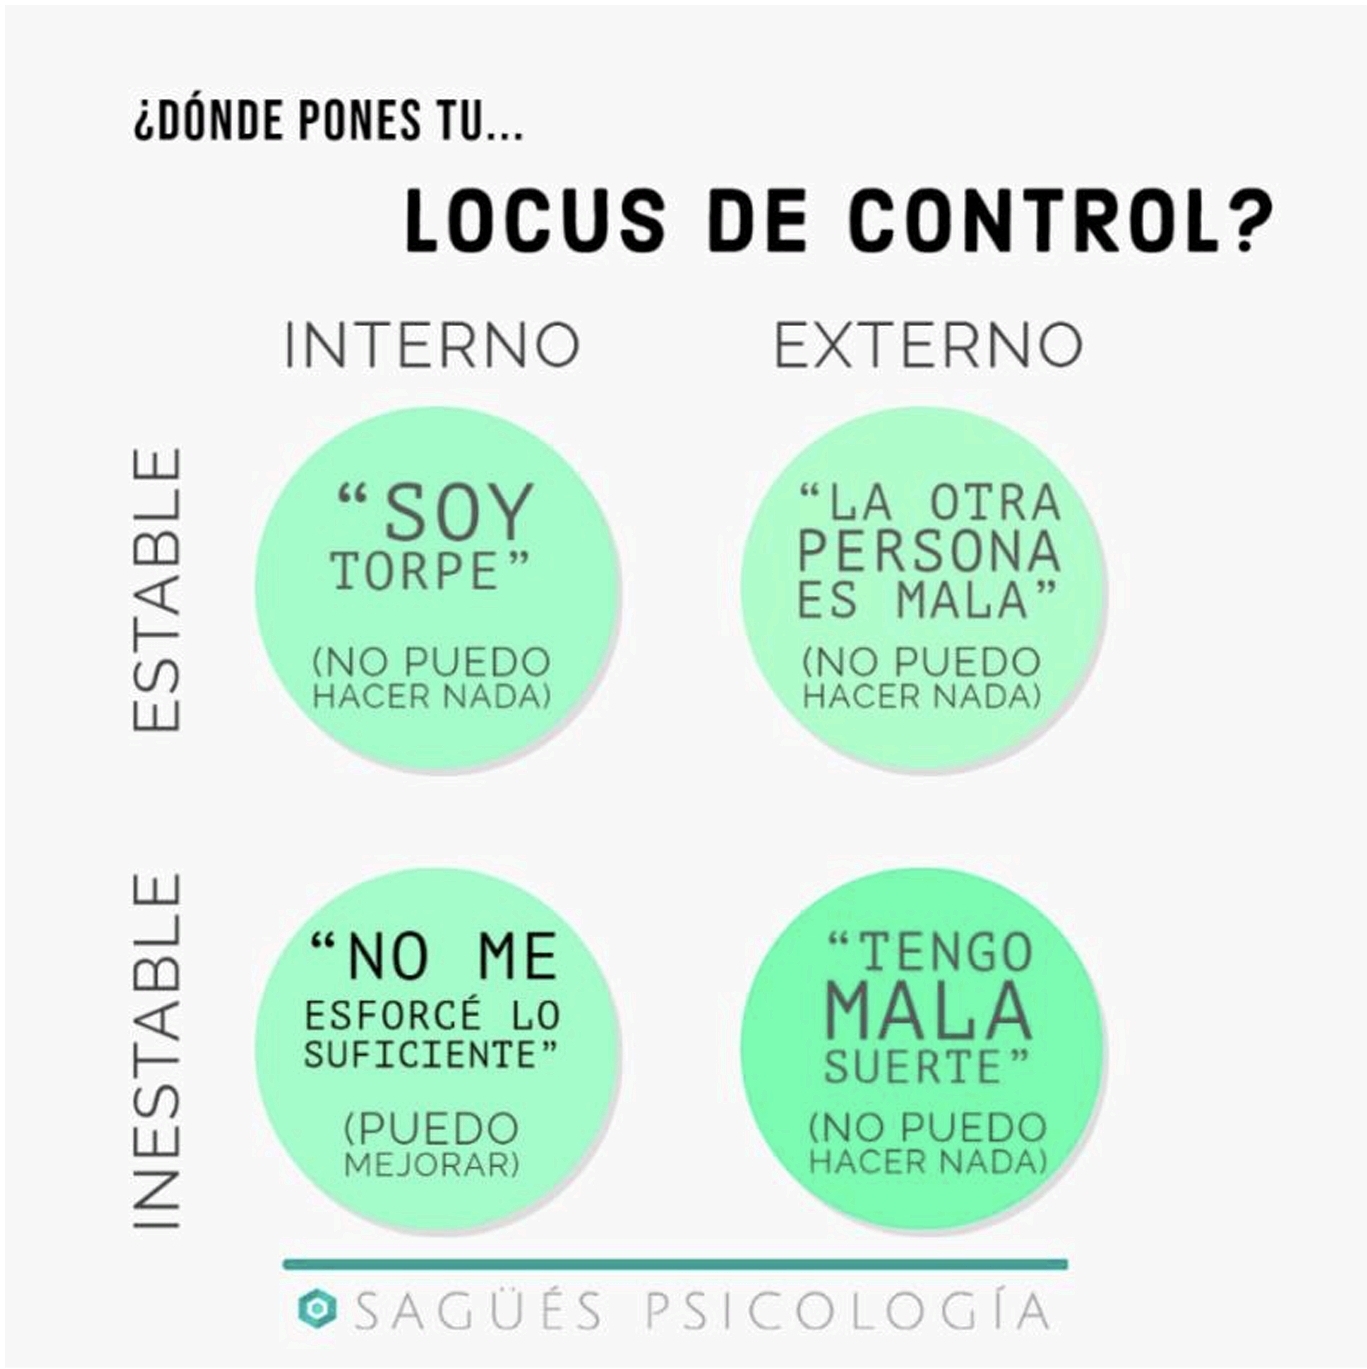 Interior locus control Sagüés psicología Oviedo